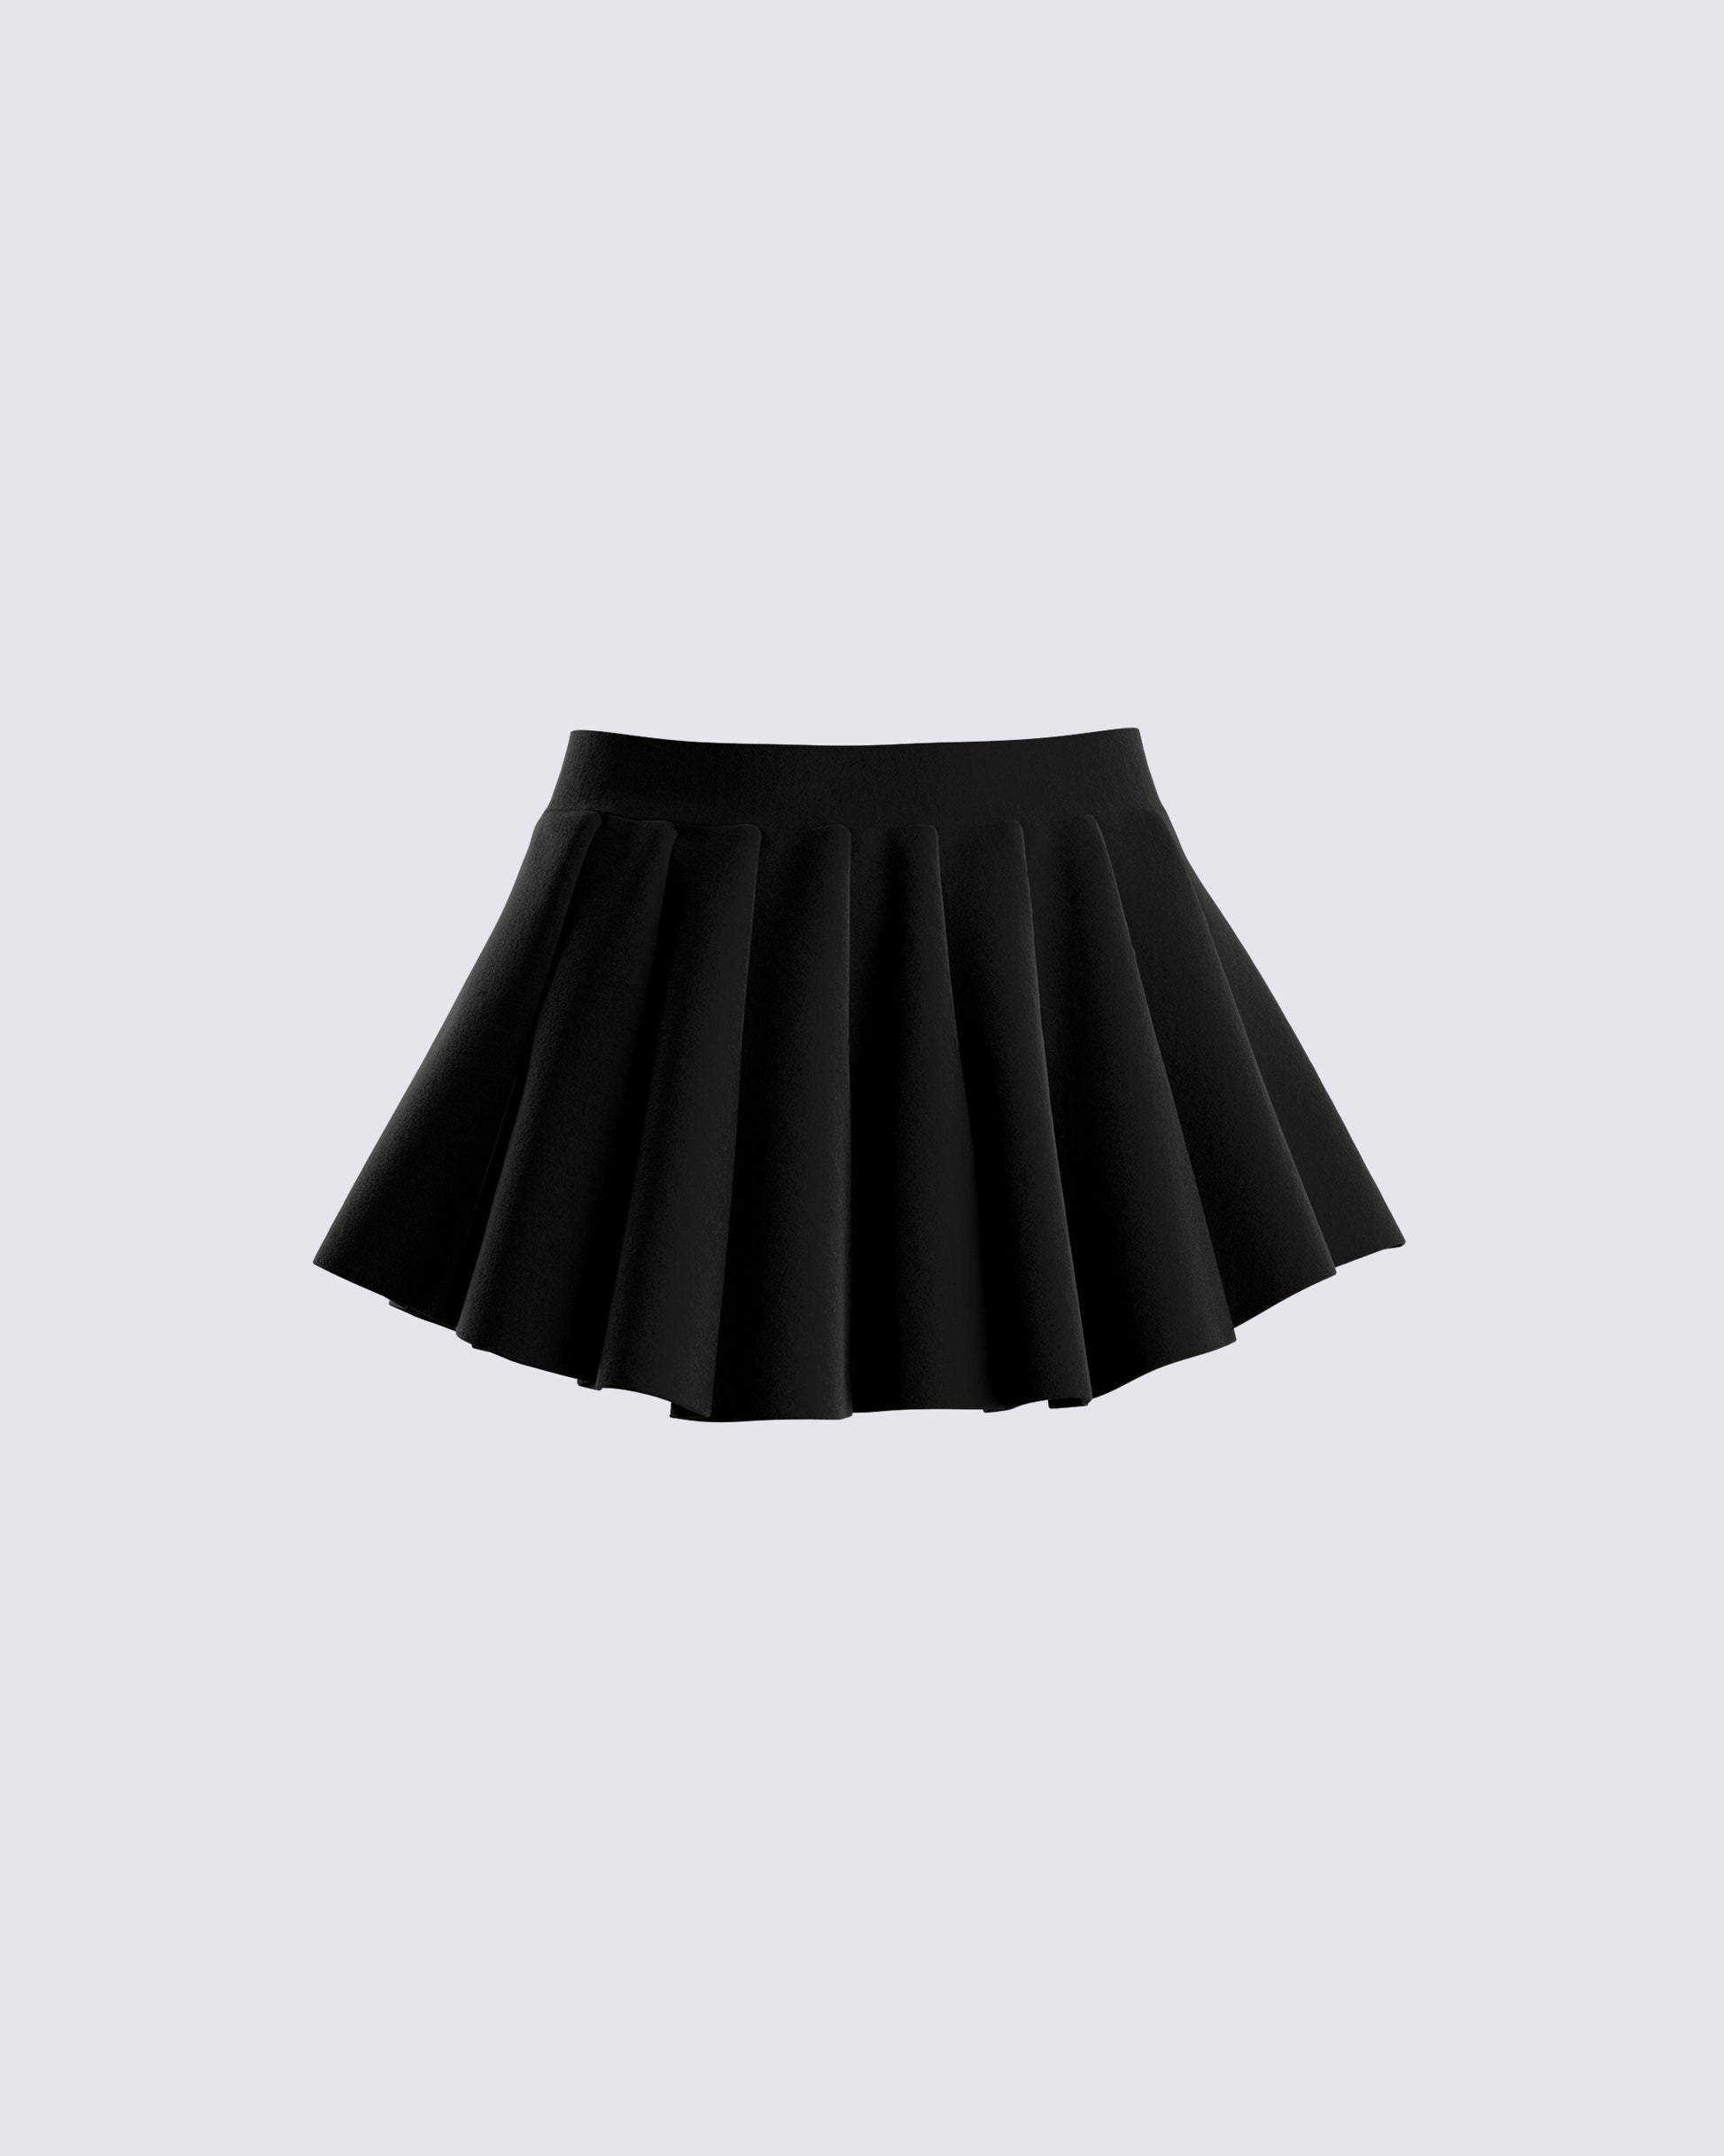 Short black pleated skirt